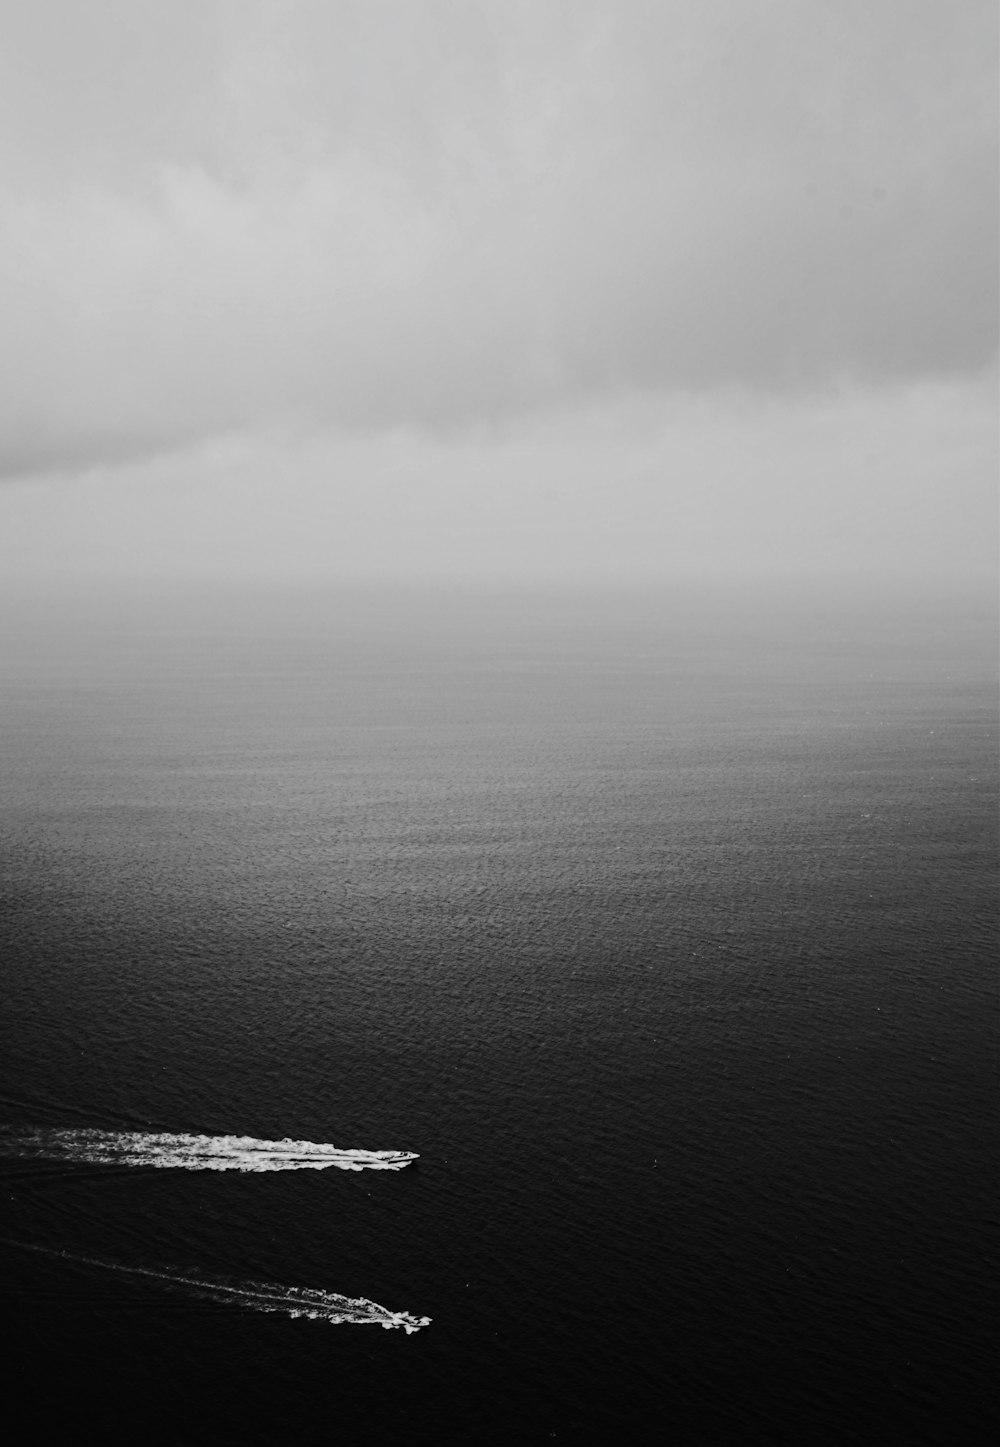 Fotografía en escala de grises de dos barcos en un cuerpo de agua